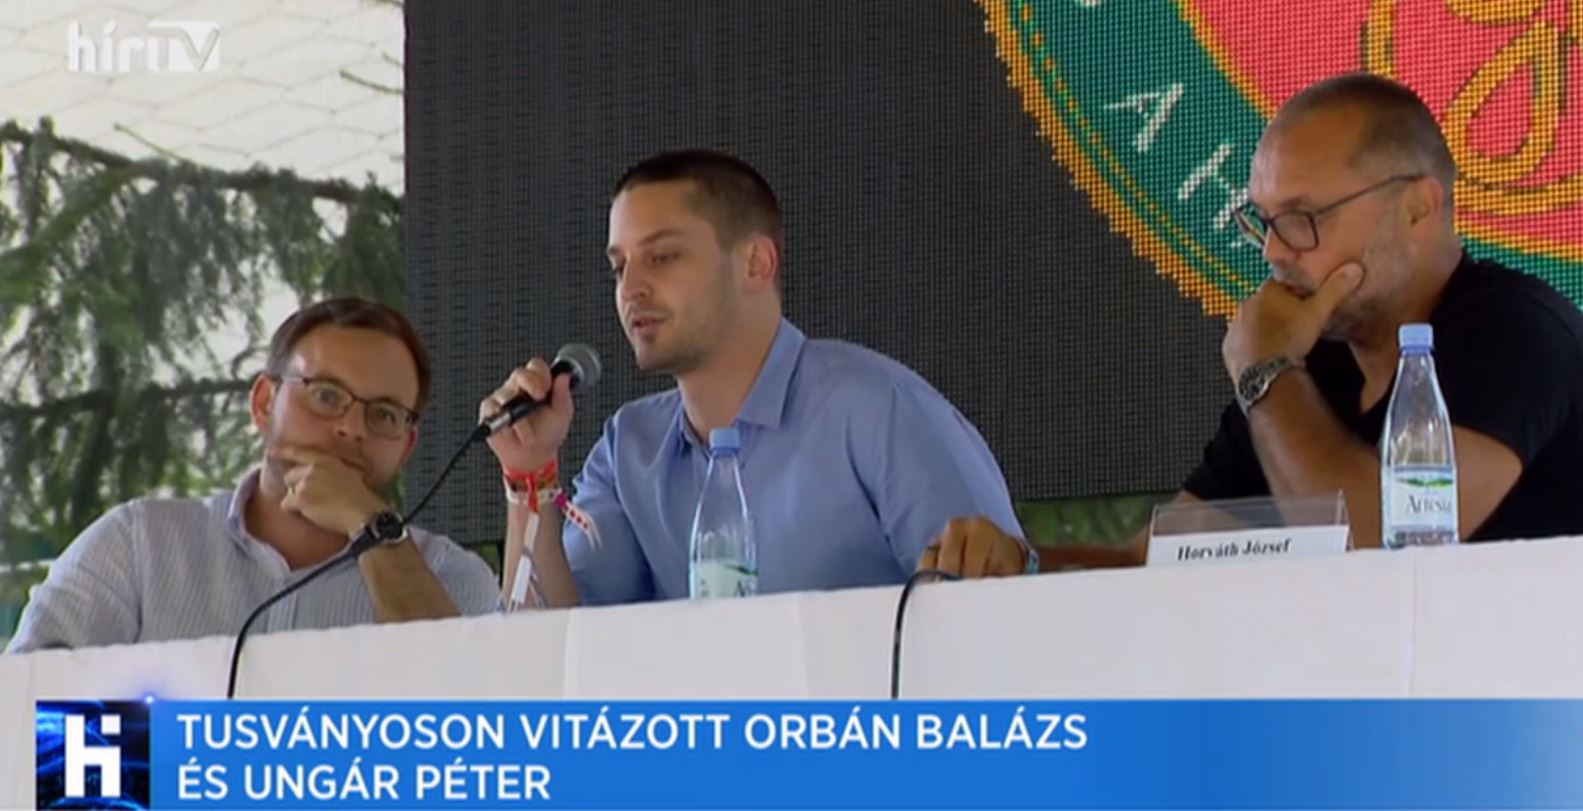 Tusványoson vitázott Orbán Balázs és Ungár Péter